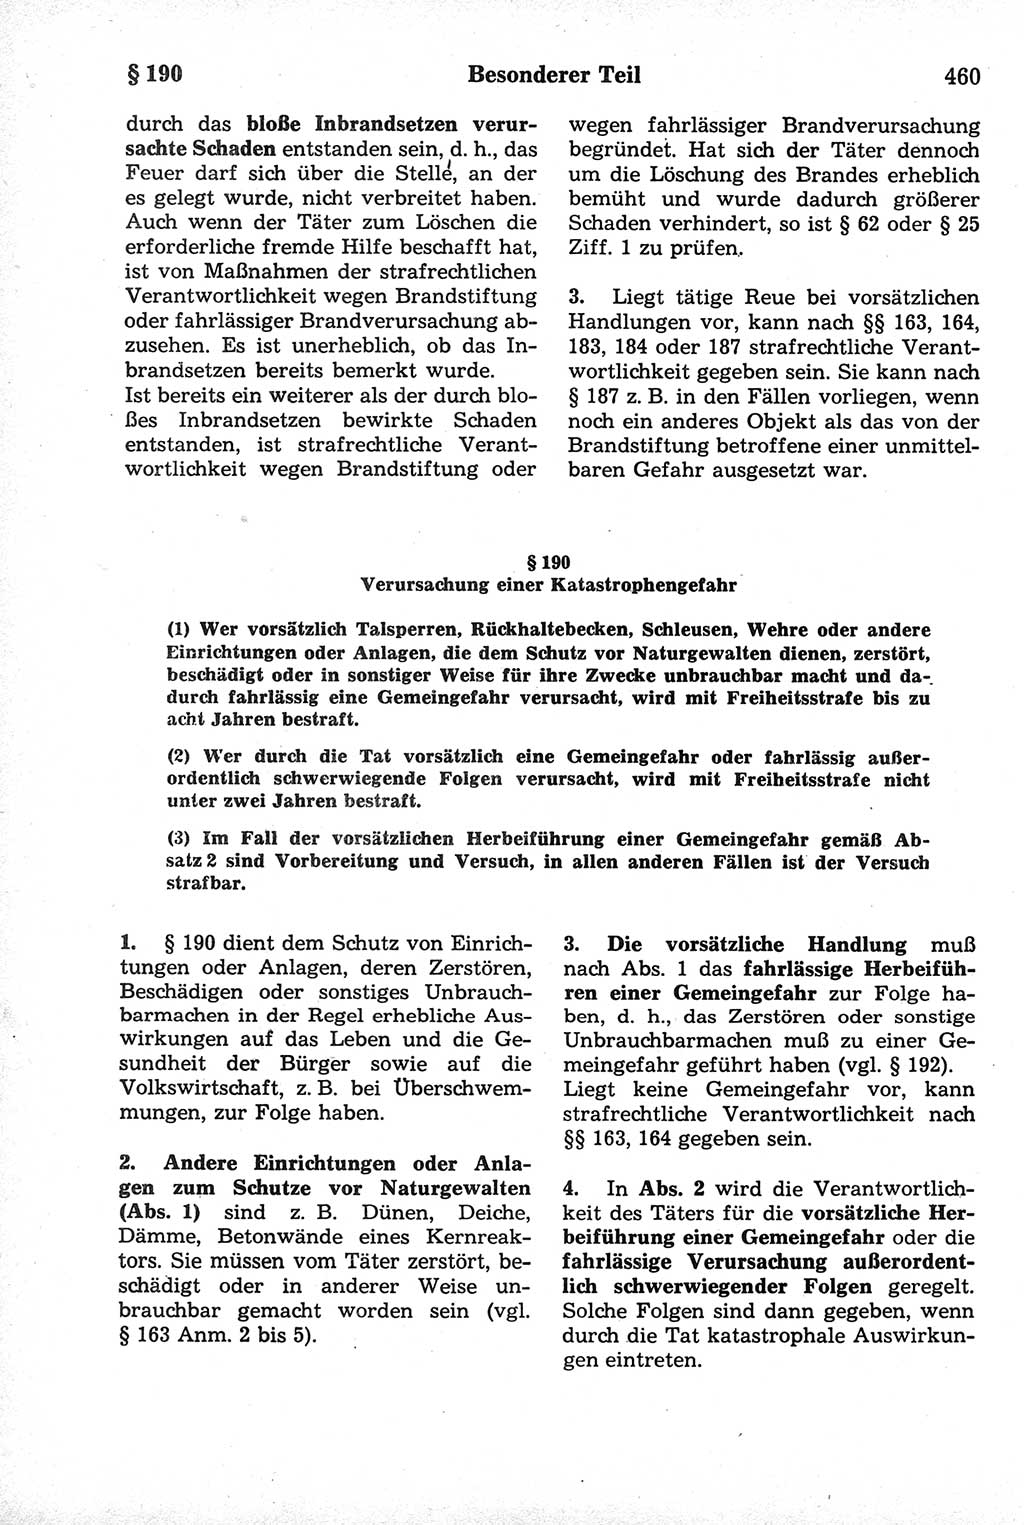 Strafrecht der Deutschen Demokratischen Republik (DDR), Kommentar zum Strafgesetzbuch (StGB) 1981, Seite 460 (Strafr. DDR Komm. StGB 1981, S. 460)